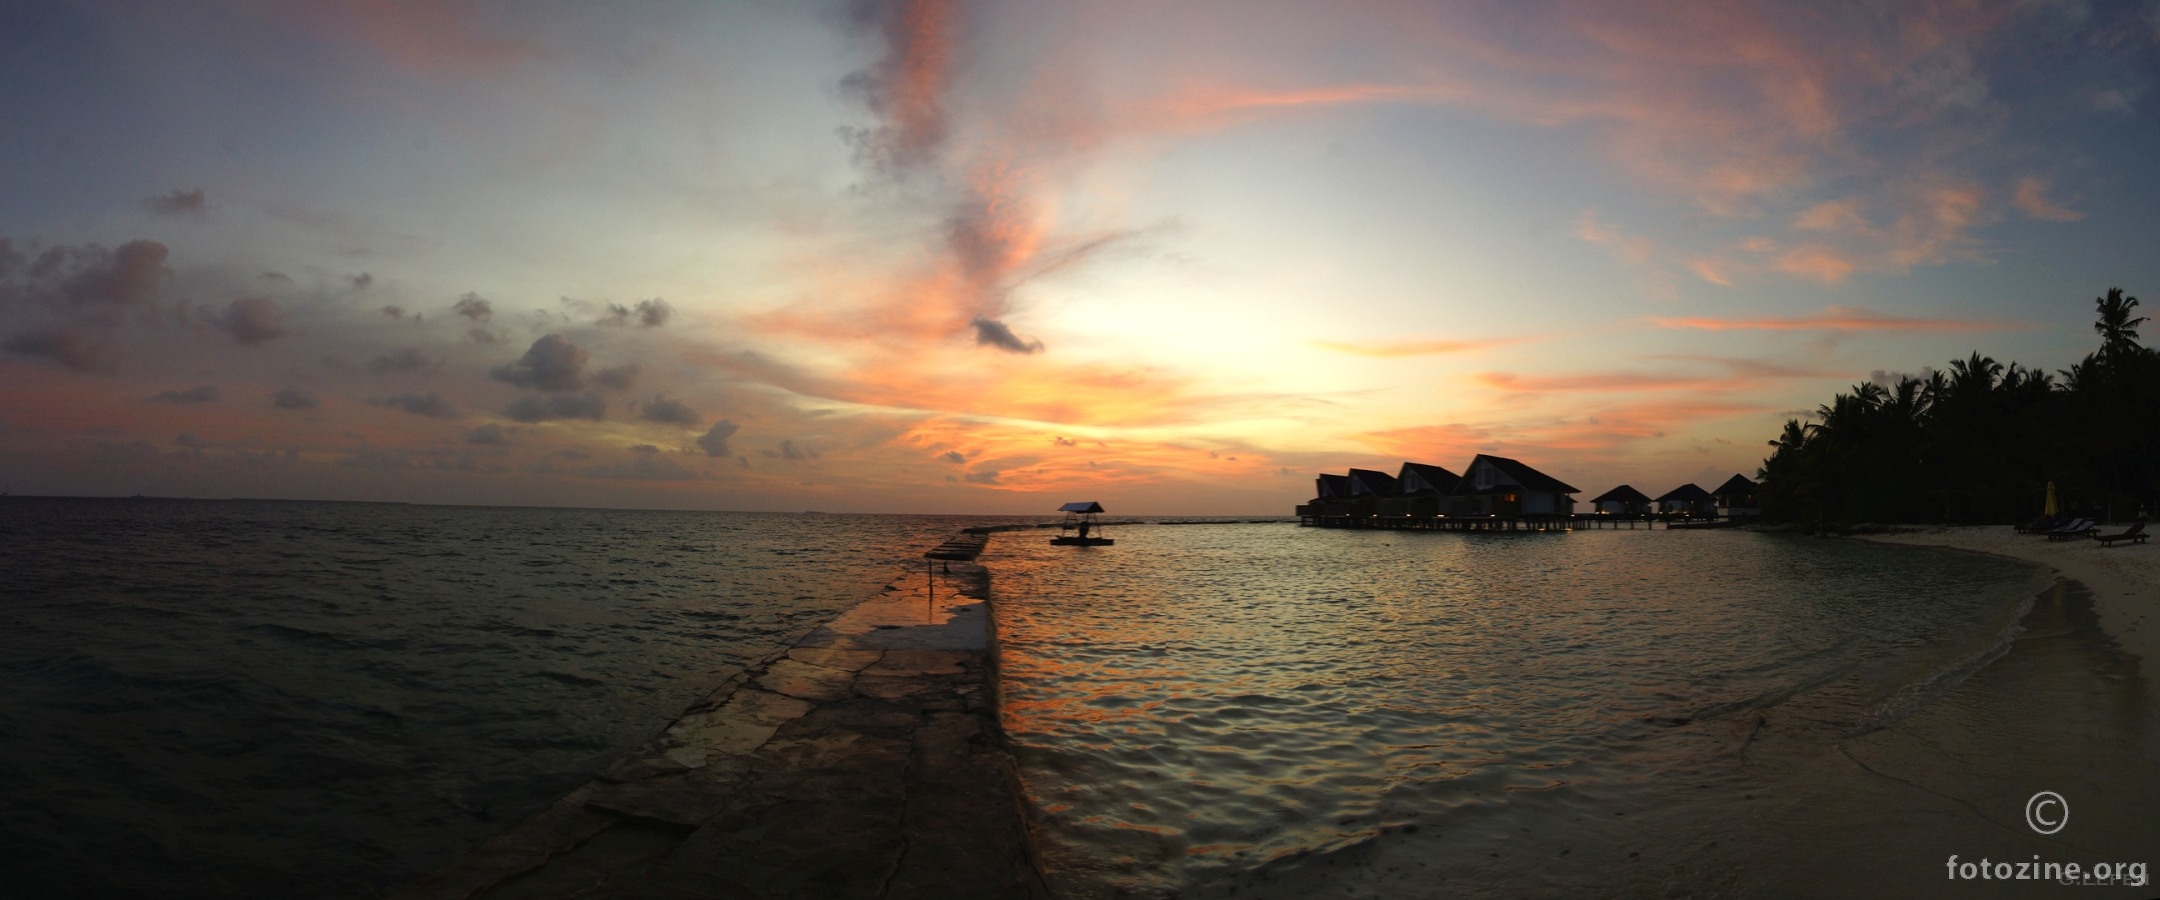 Maledives sunset